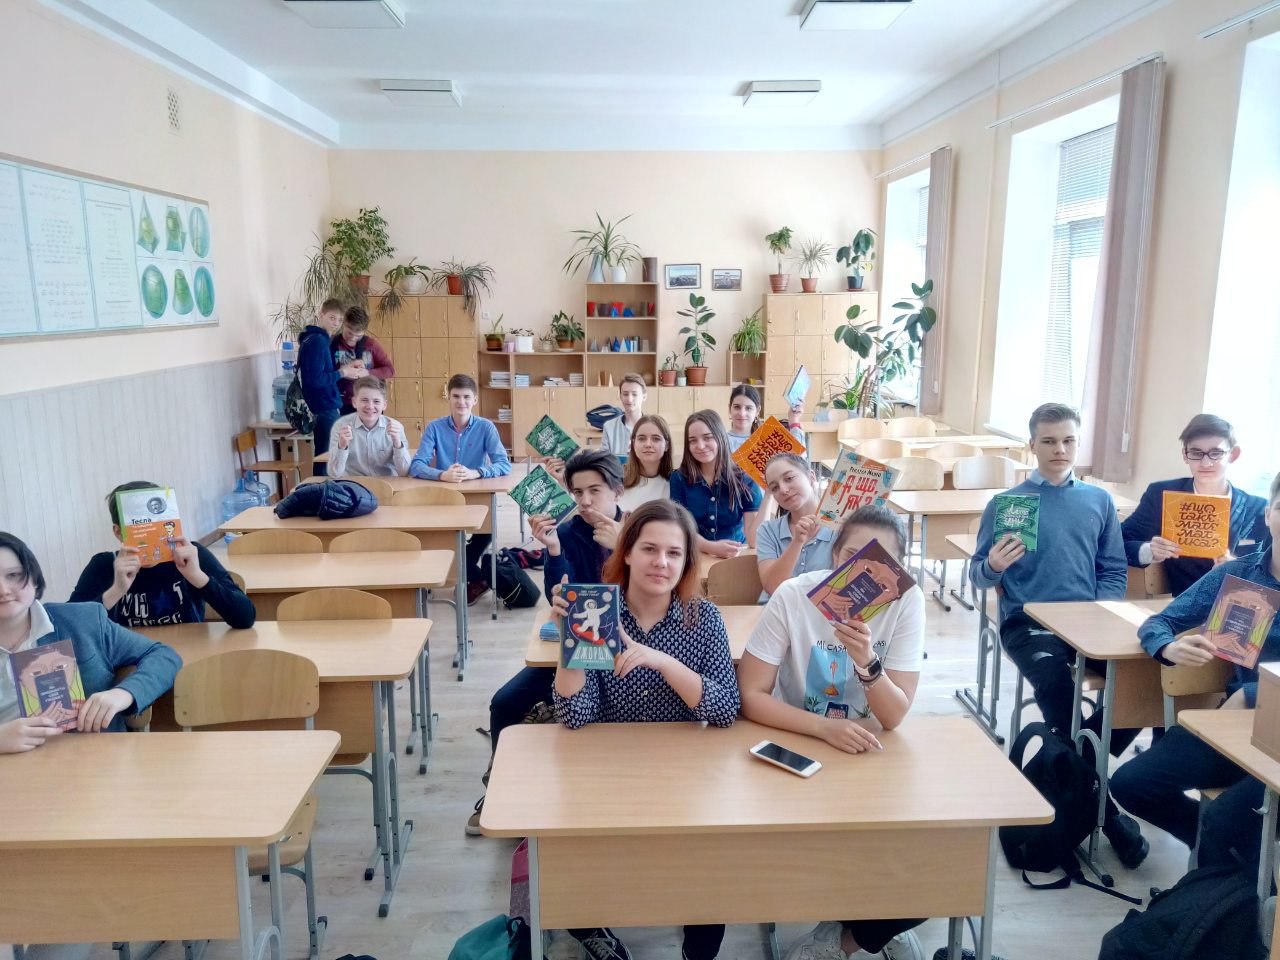 15 київських шкіл отримали нові науково-популярні книжки від проекту ЛакіБукс до річниці відкриття першої в Україні гімназії з українською мовою викладання